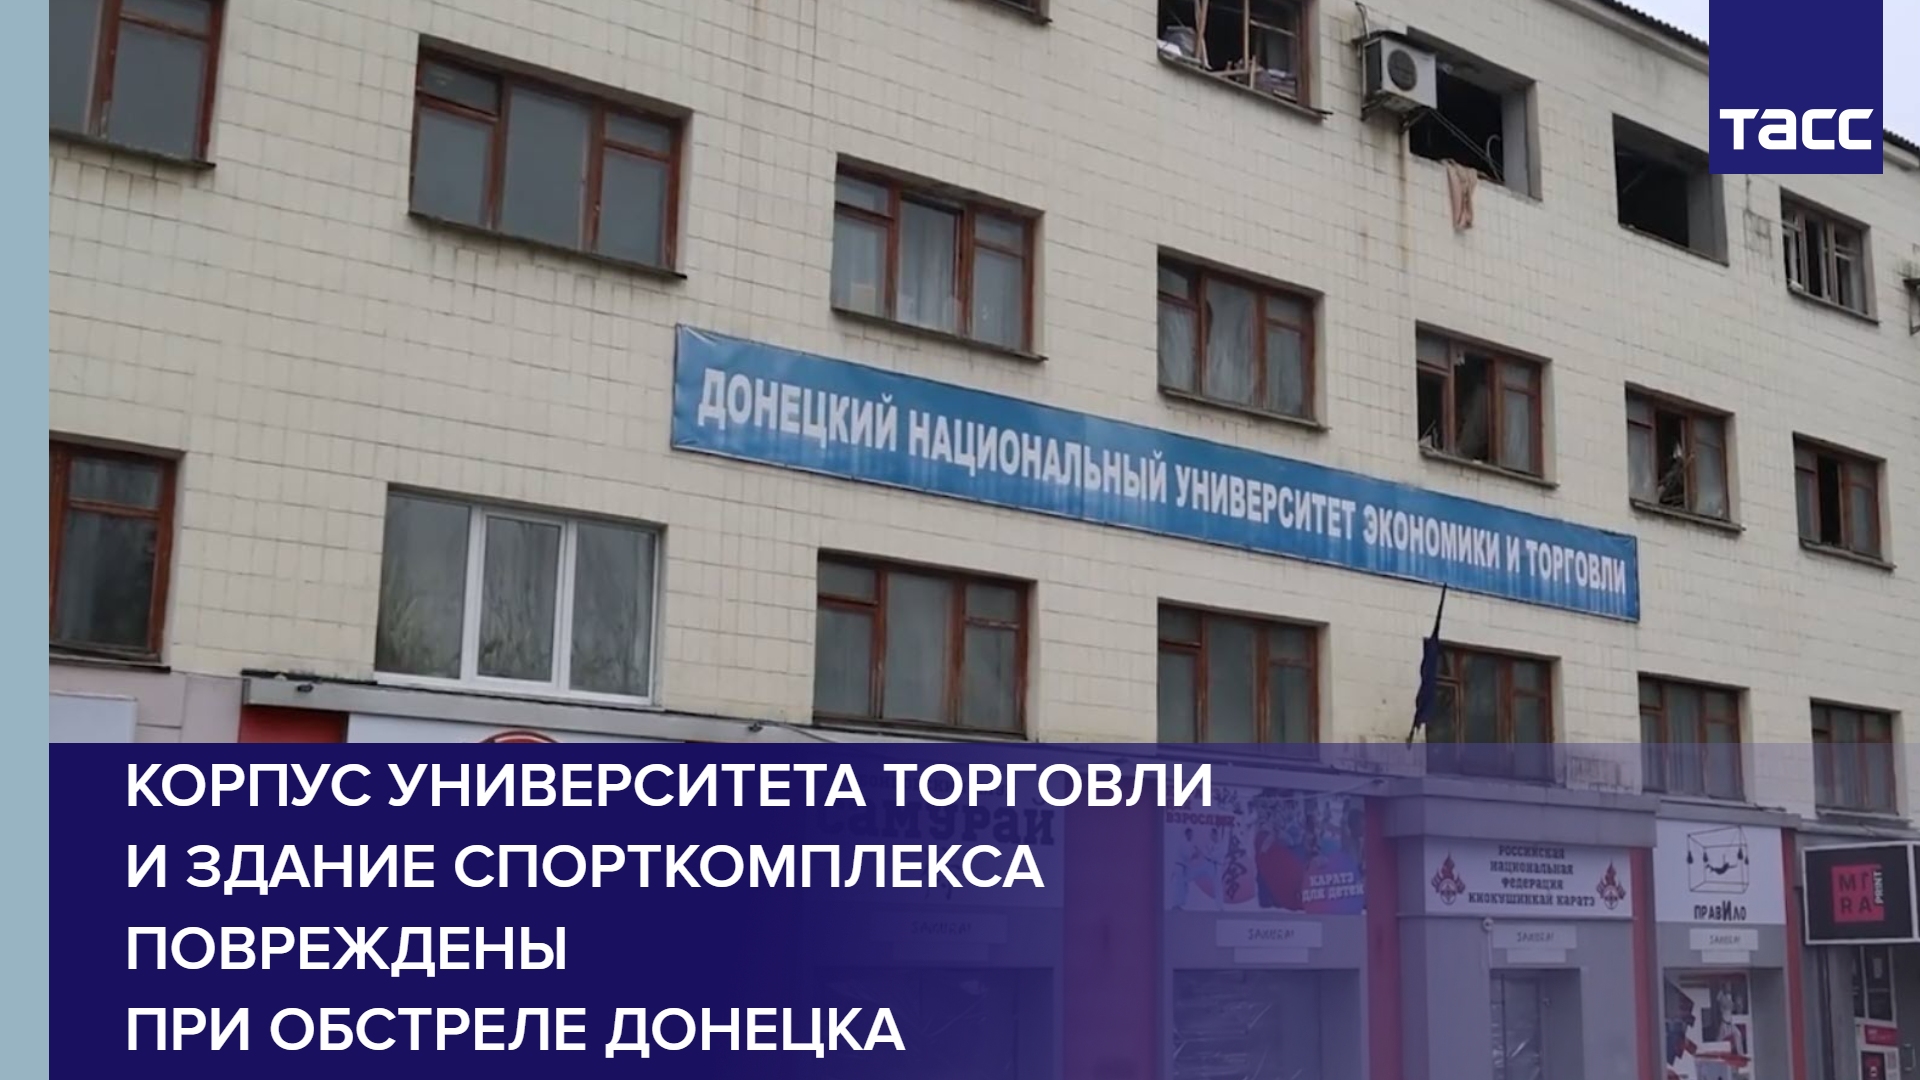 Корпус университета торговли и здание спорткомплекса повреждены при обстреле Донецка #shorts